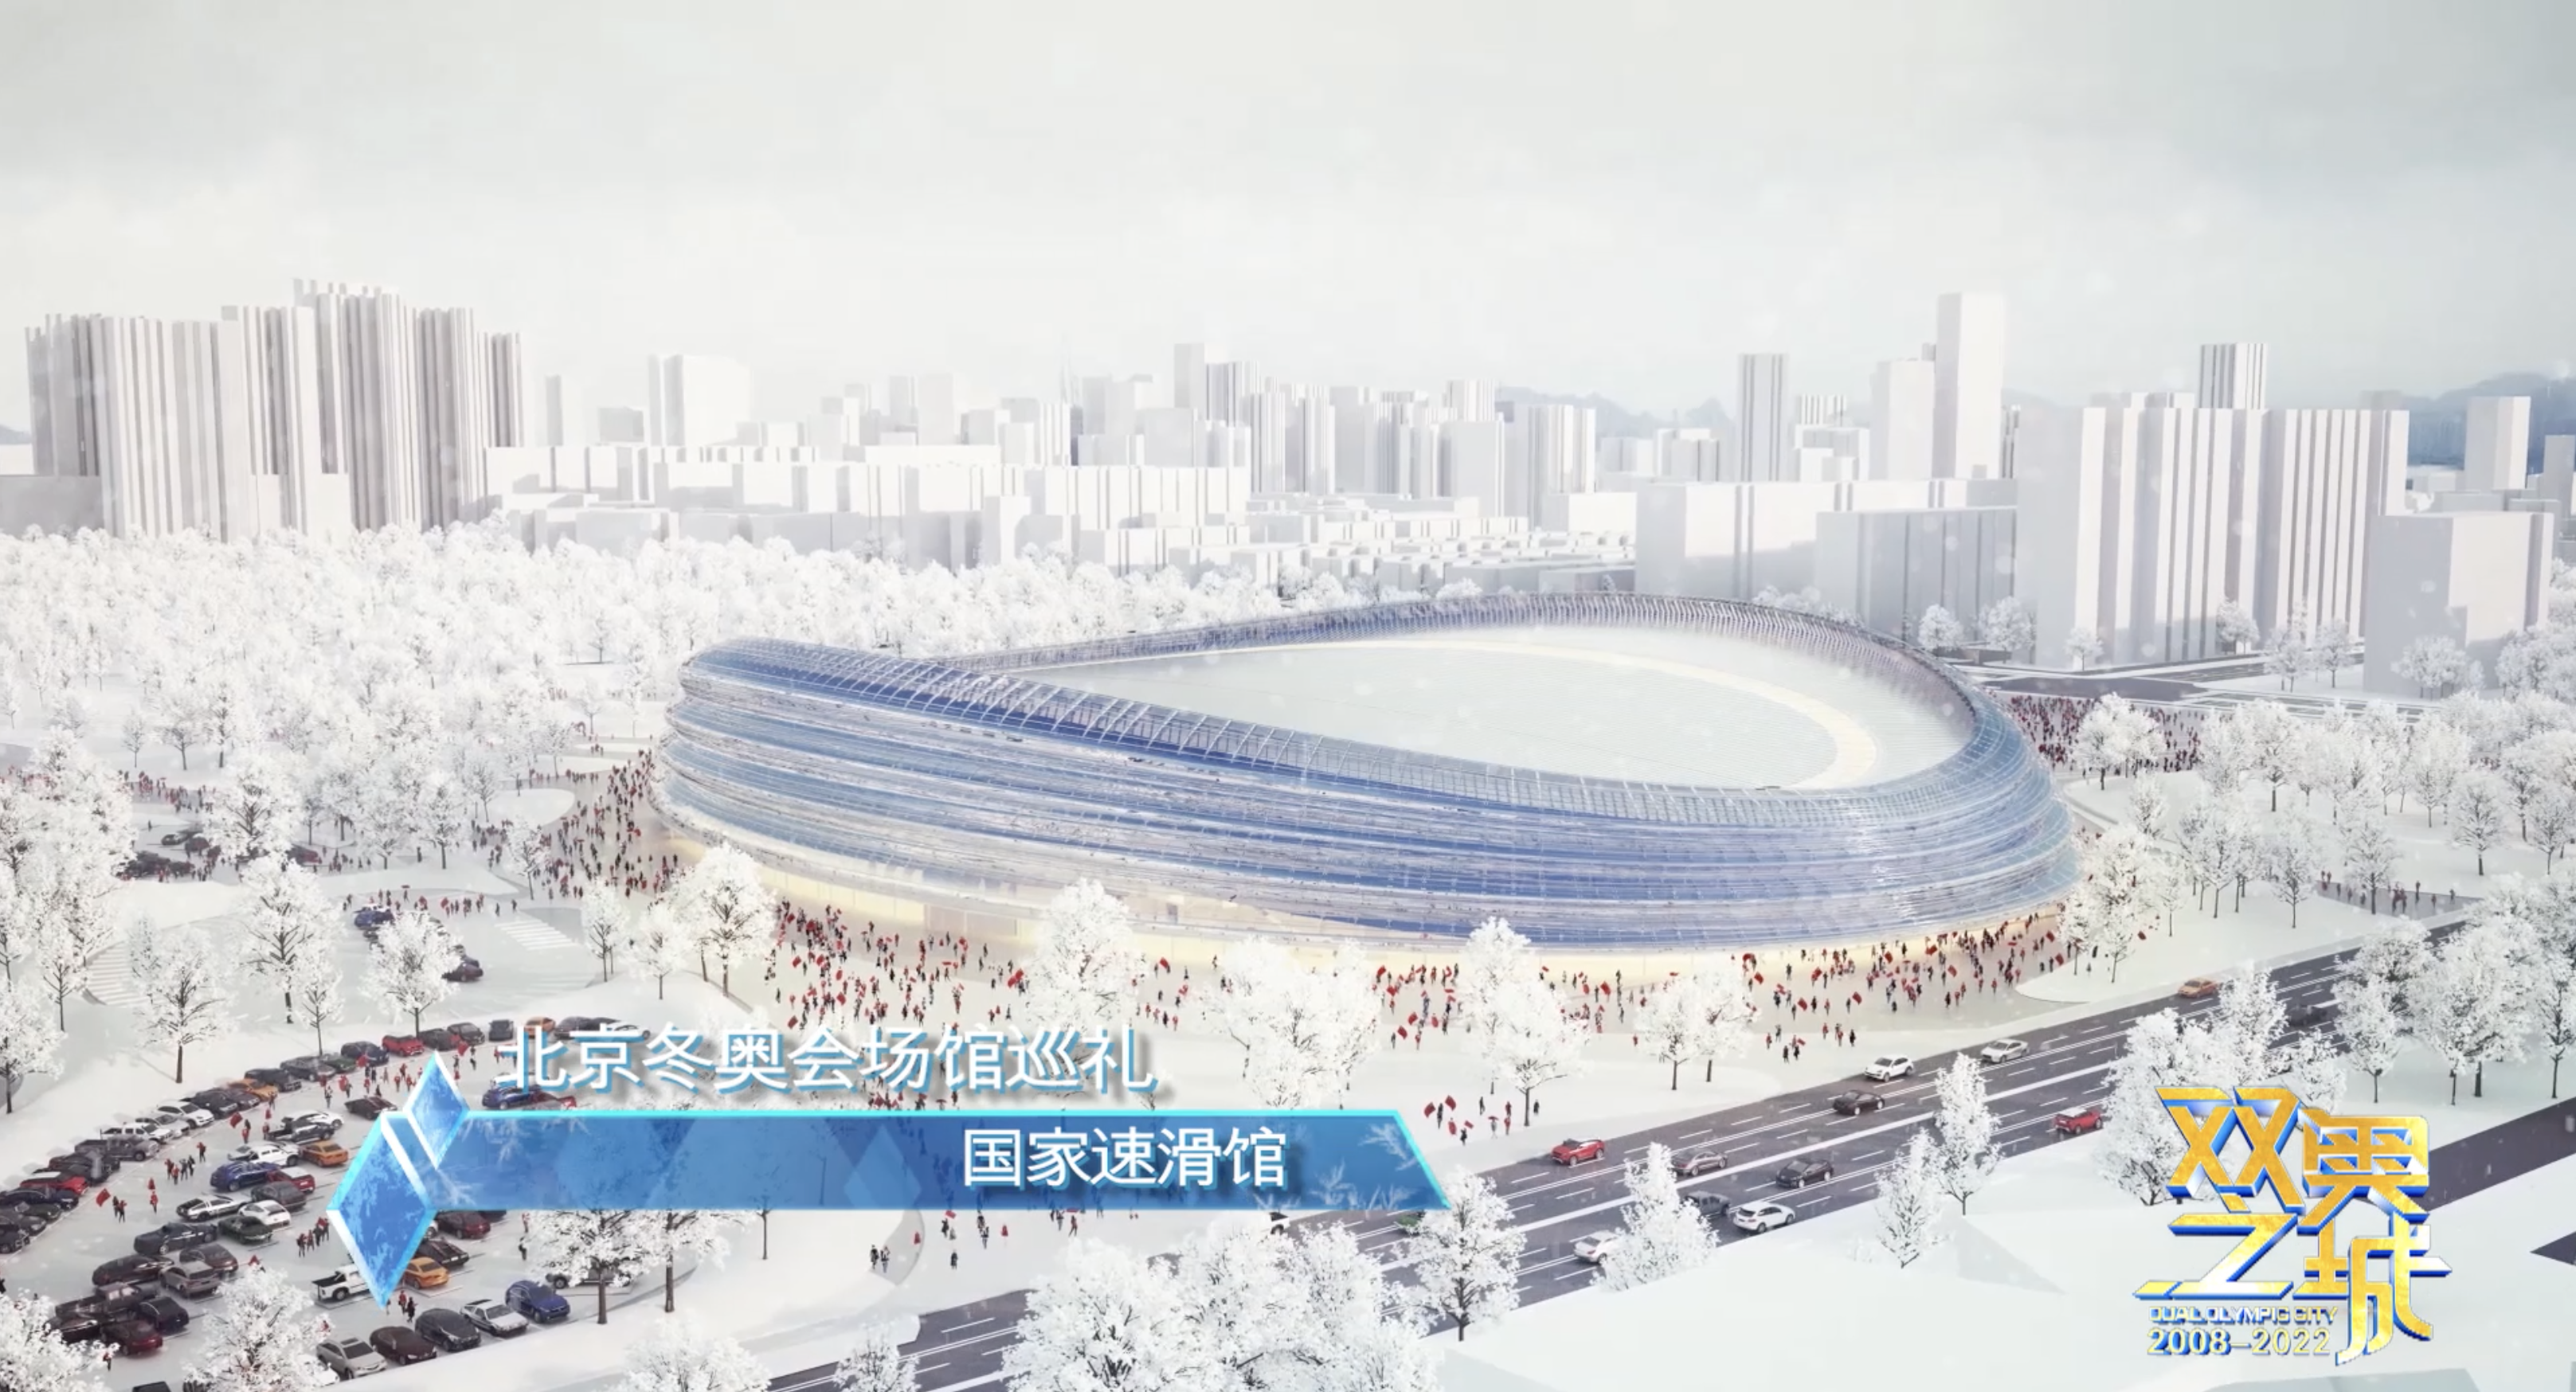 国家速滑馆位于北京奥林匹克森林公园南园西北侧,是2022年北京冬奥会